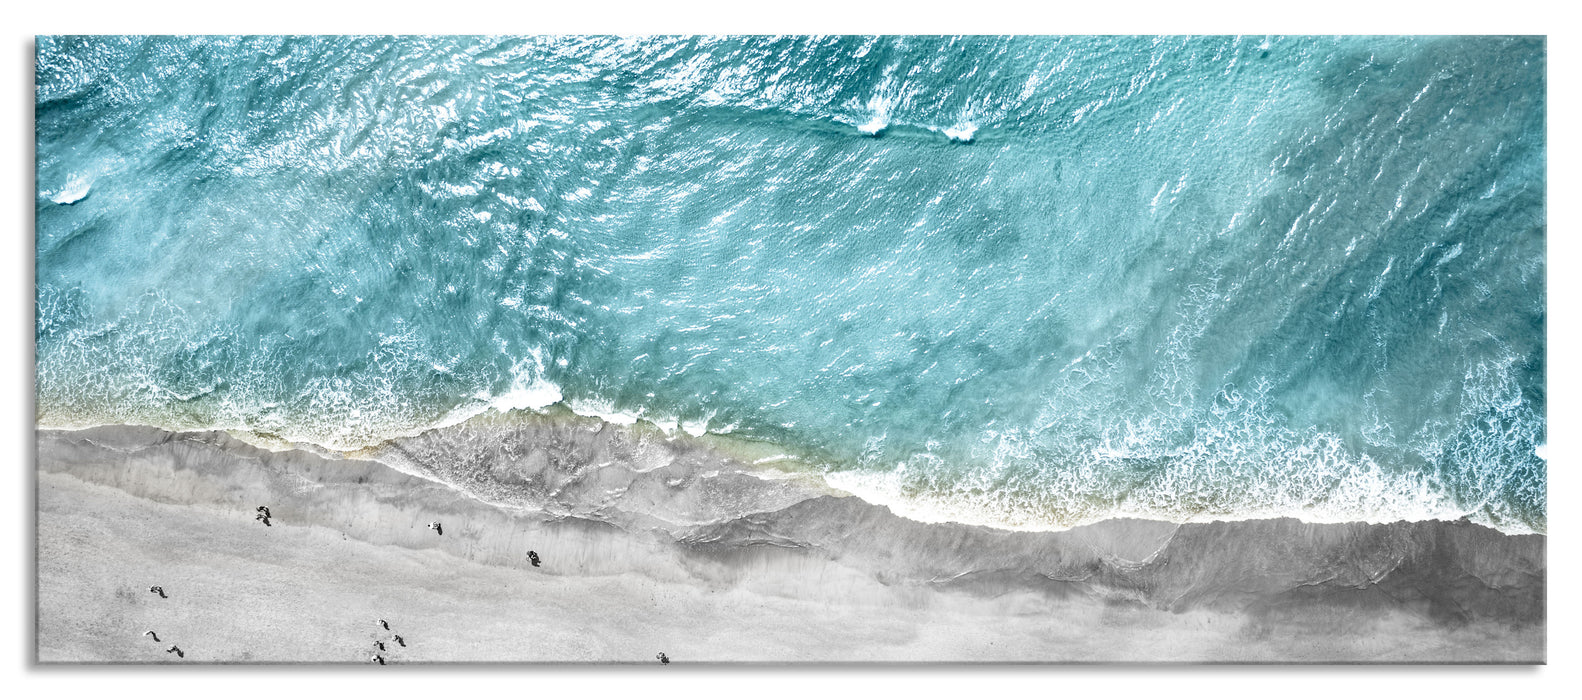 Luftaufnahme von türkisem Meer am Strand B&W Detail, Glasbild Panorama